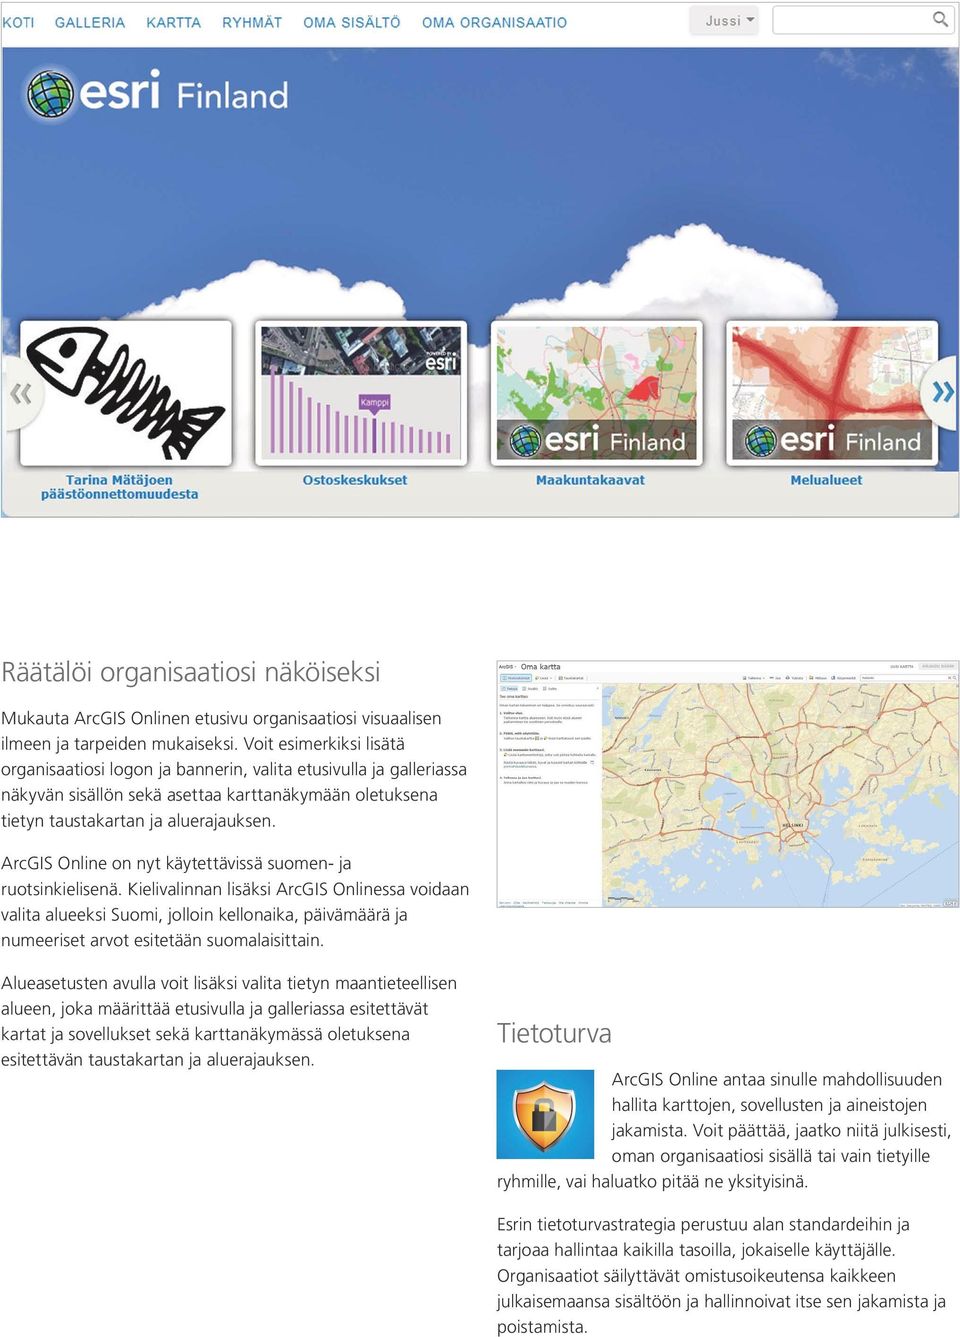 ArcGIS Online on nyt käytettävissä suomen- ja ruotsinkielisenä.